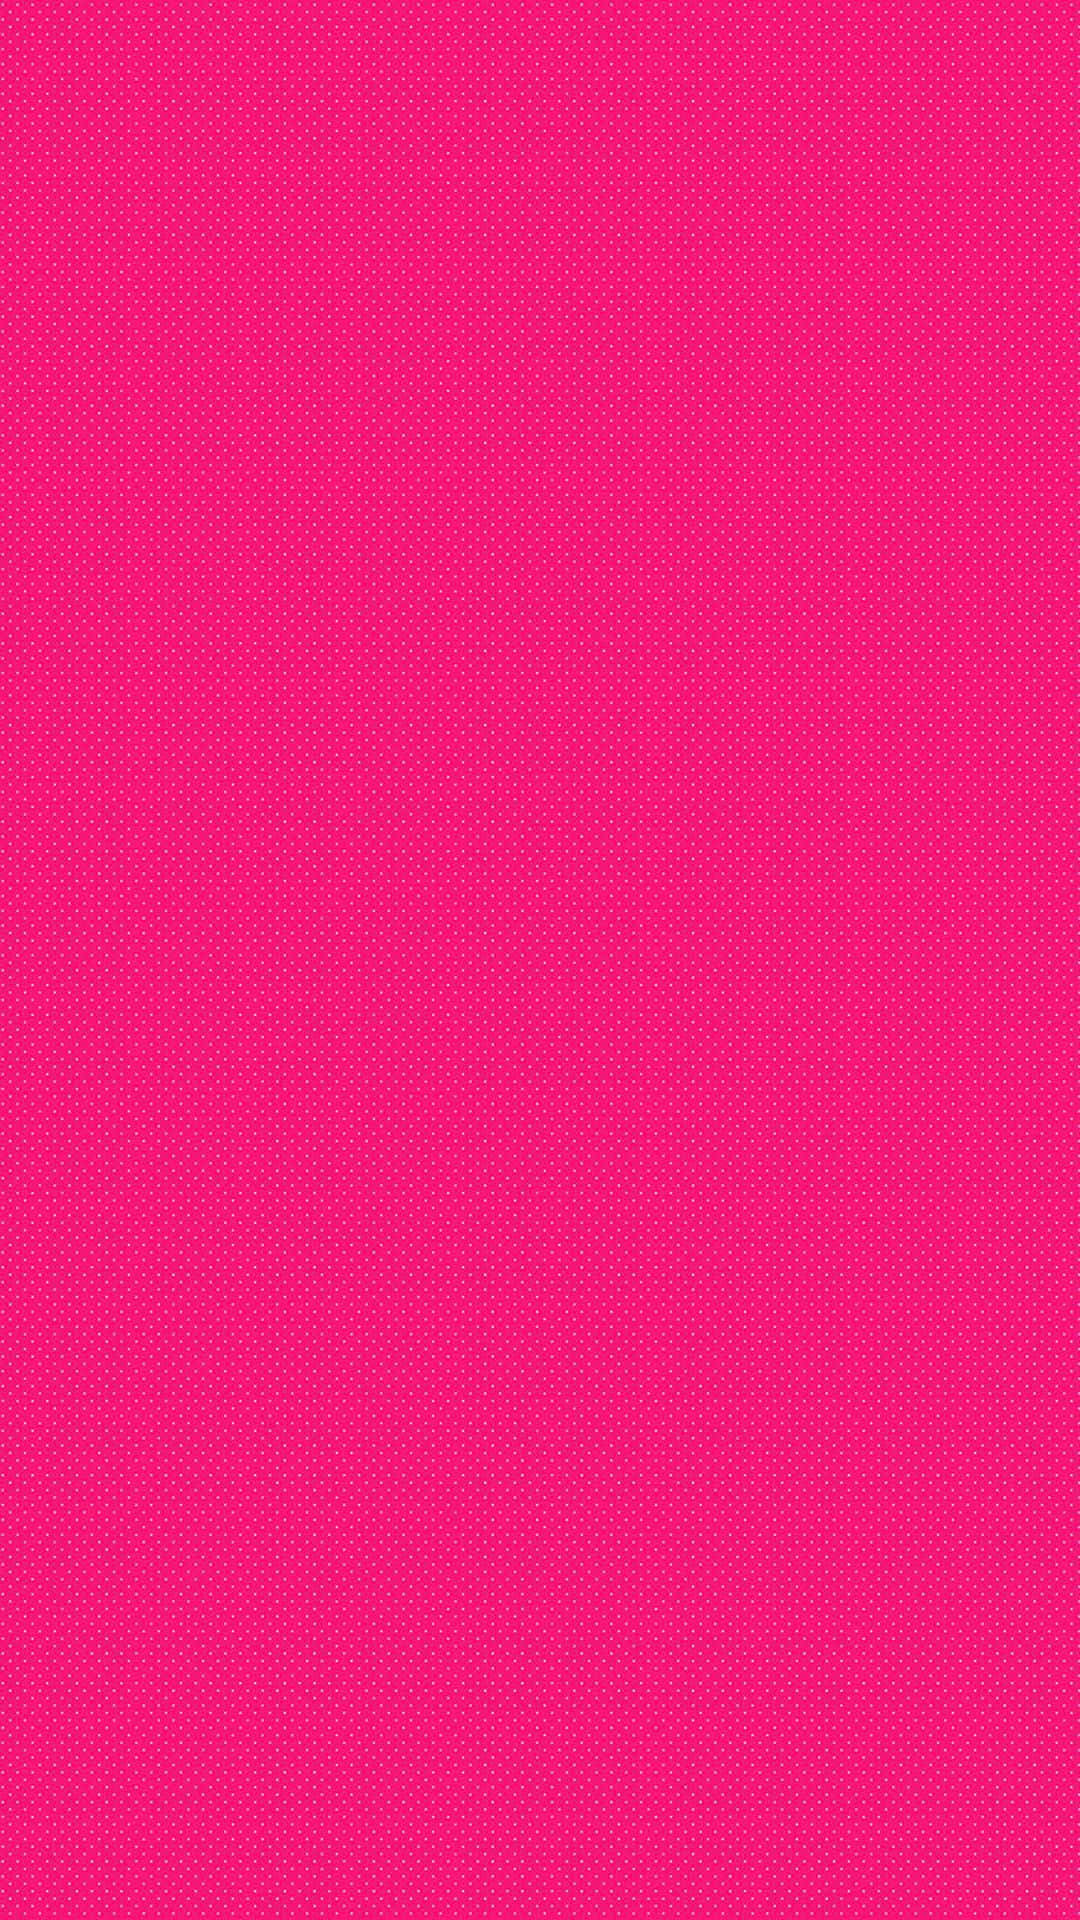 71 Bright Pink Wallpaper  WallpaperSafari